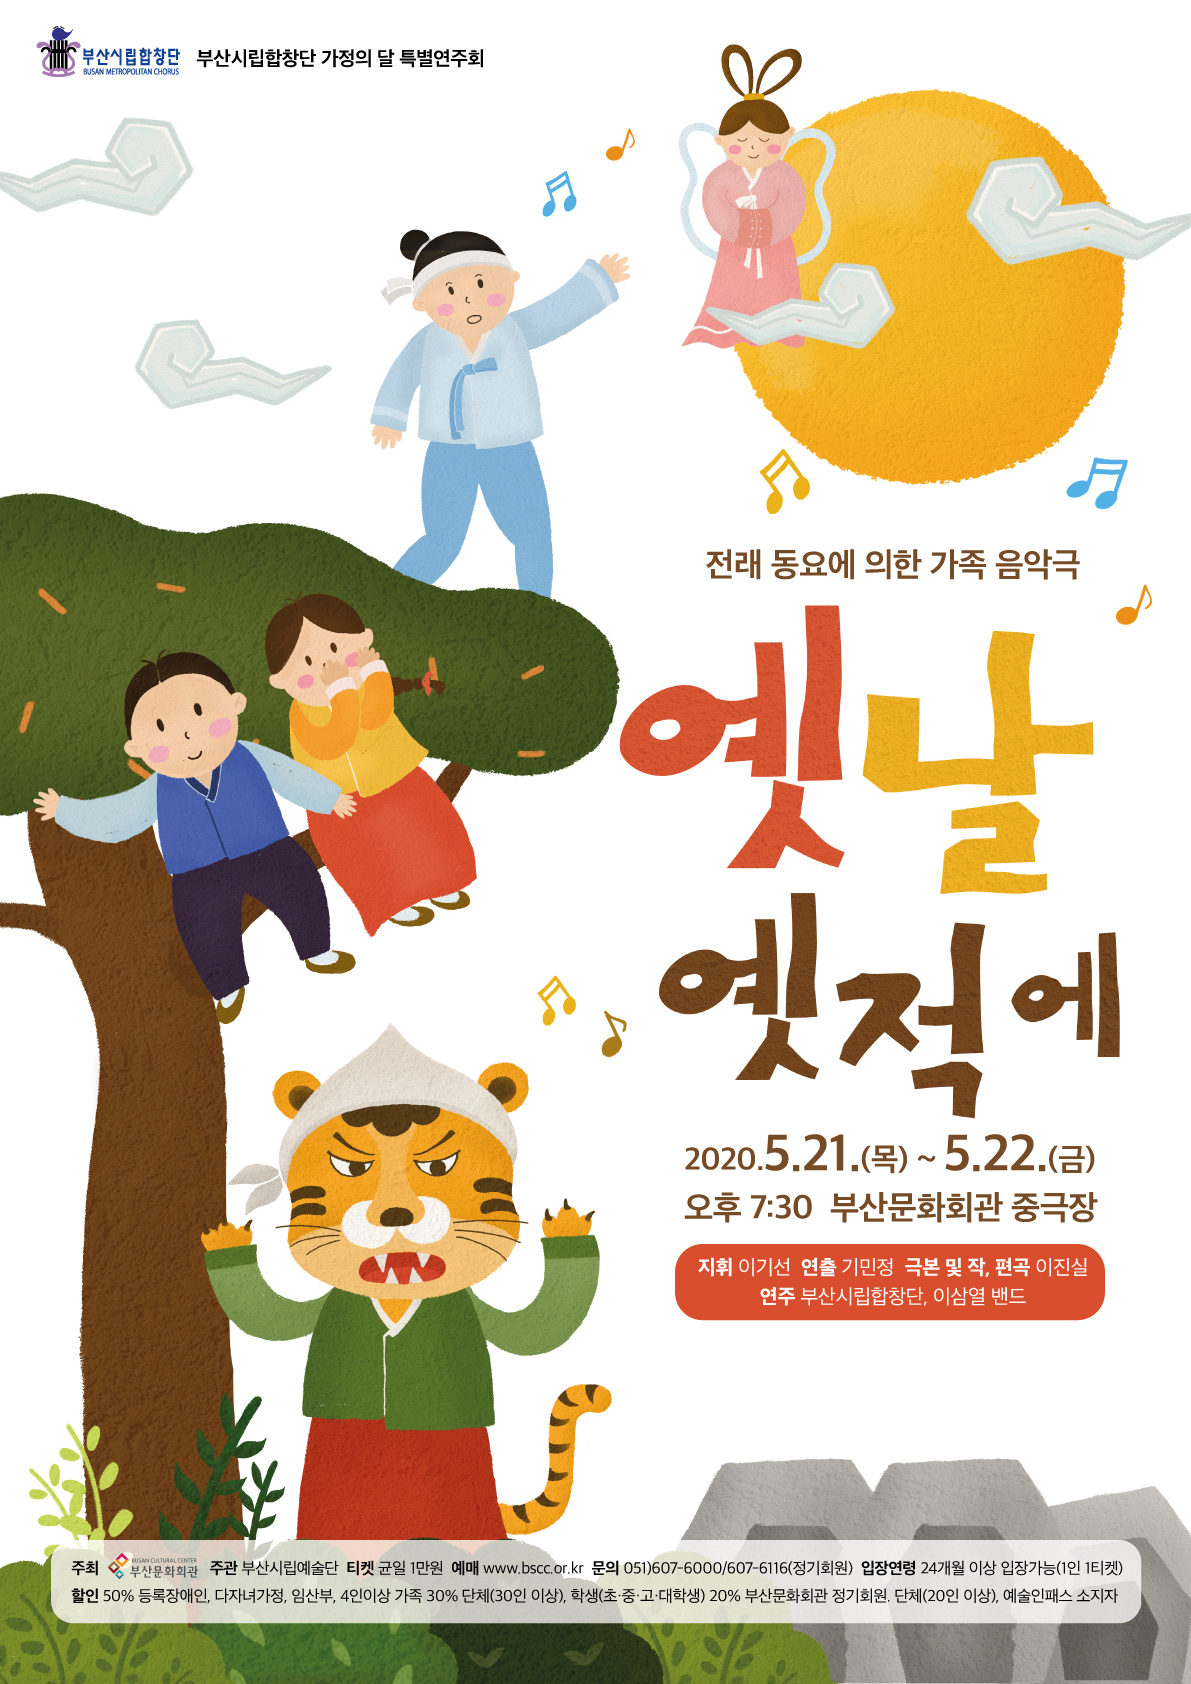 부산시립합창단 특별연주회 <전래동요에 의한 가족 음악극 - 옛날 옛적에>